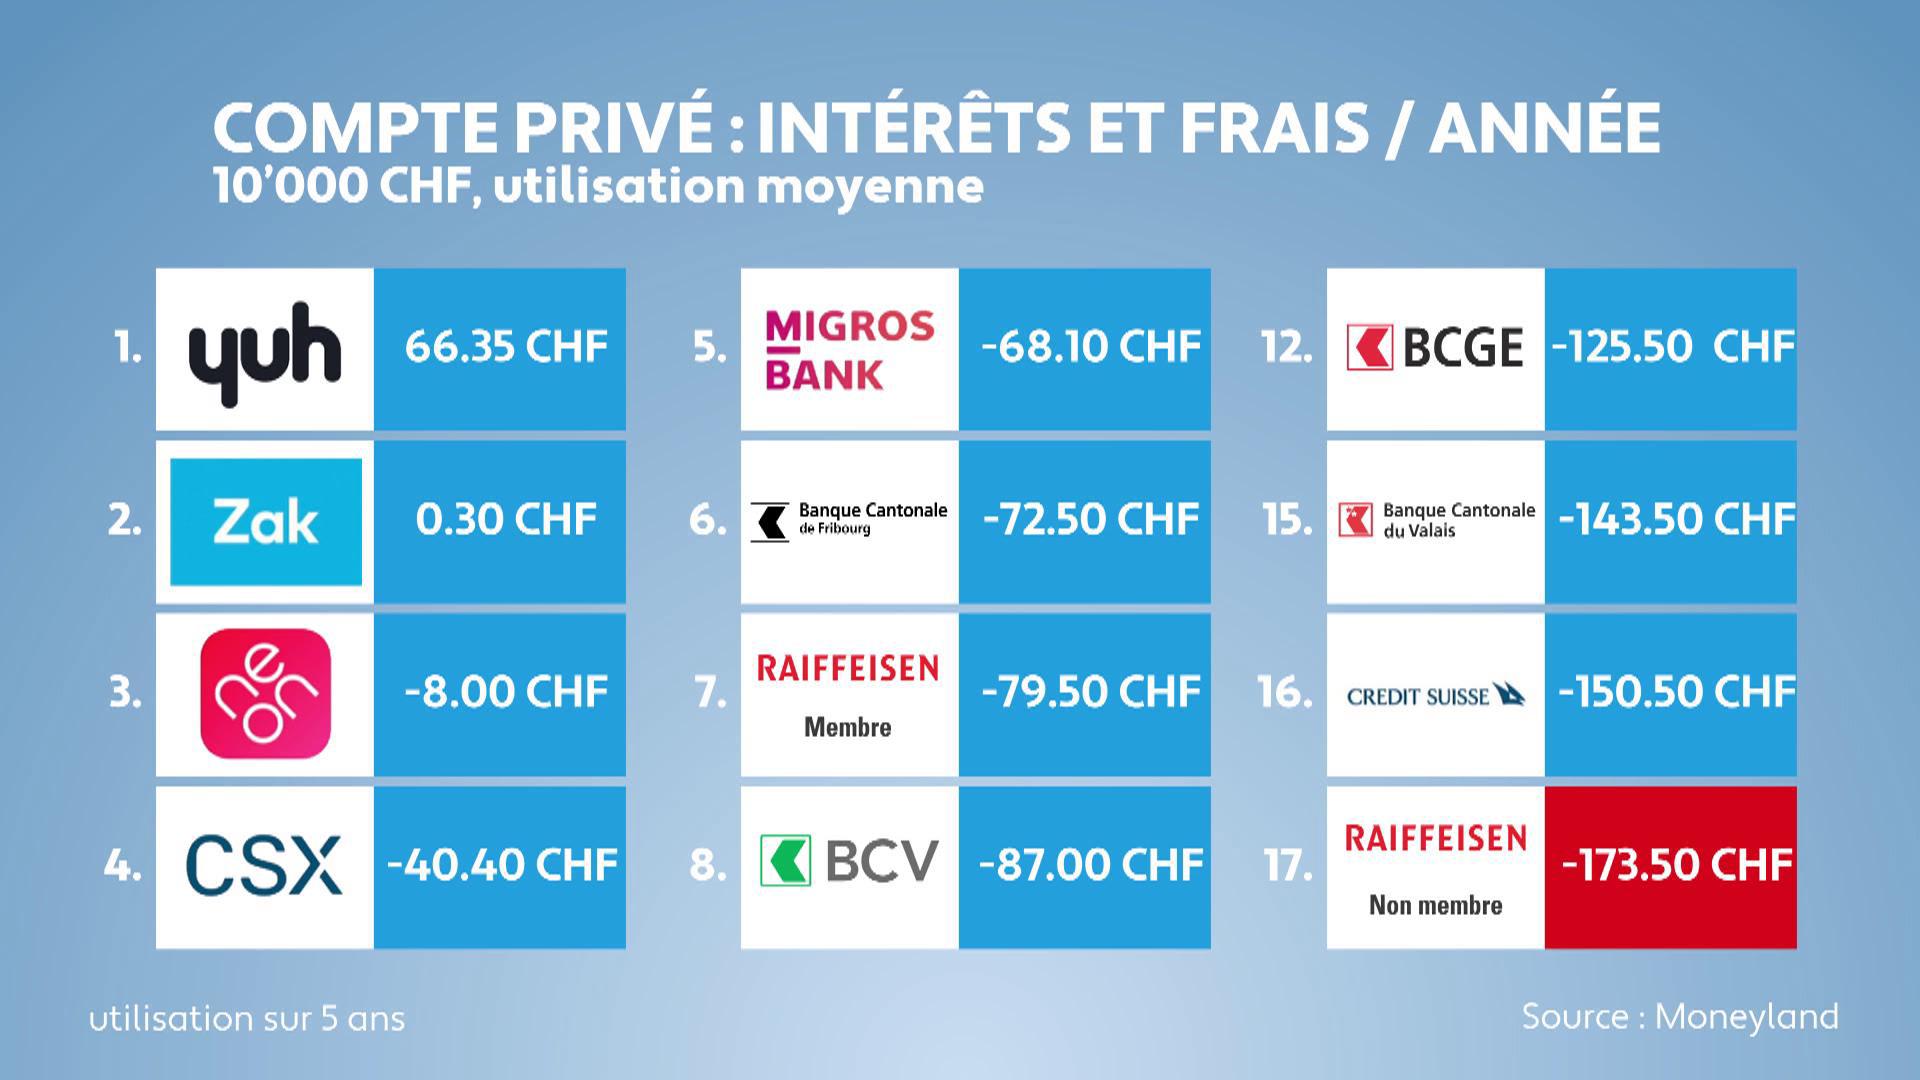 Comparaison des comptes bancaires des grandes banques et des quatre plus grandes banques cantonales de Suisse romande.